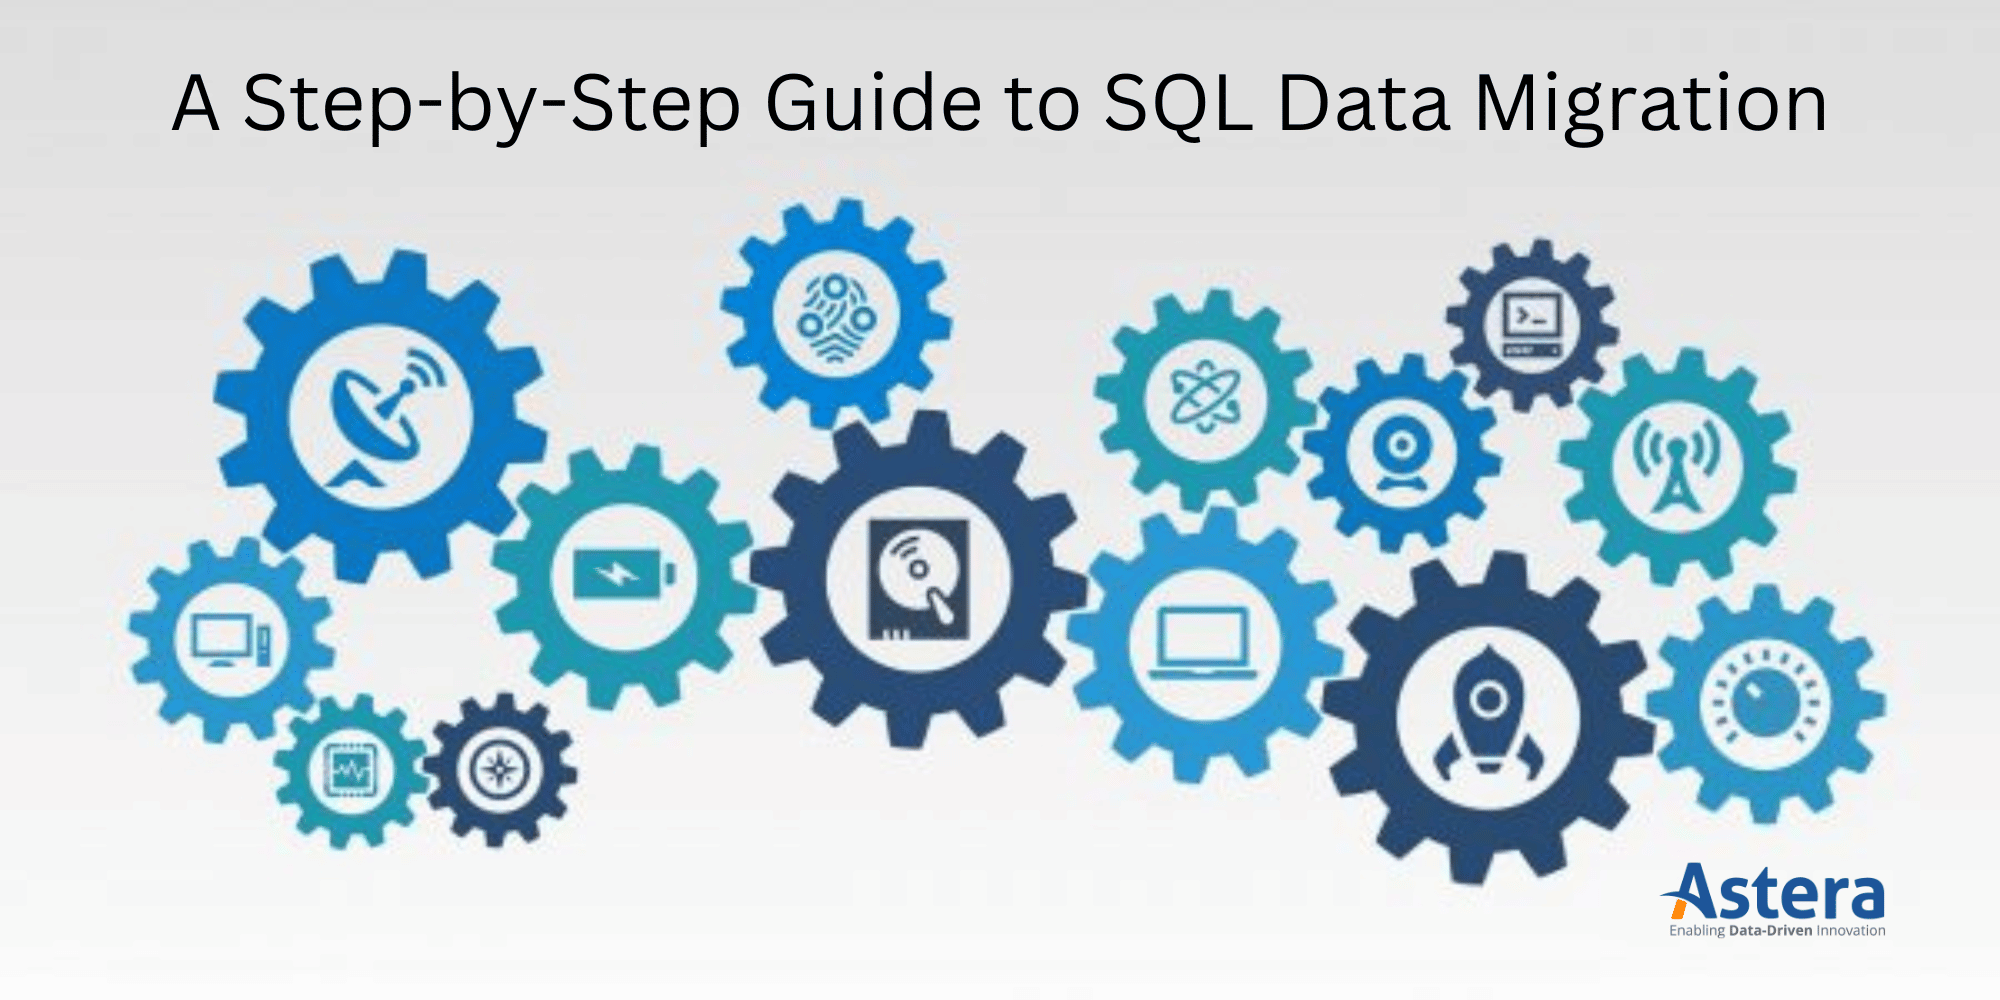 Una guía paso a paso para la migración de datos SQL